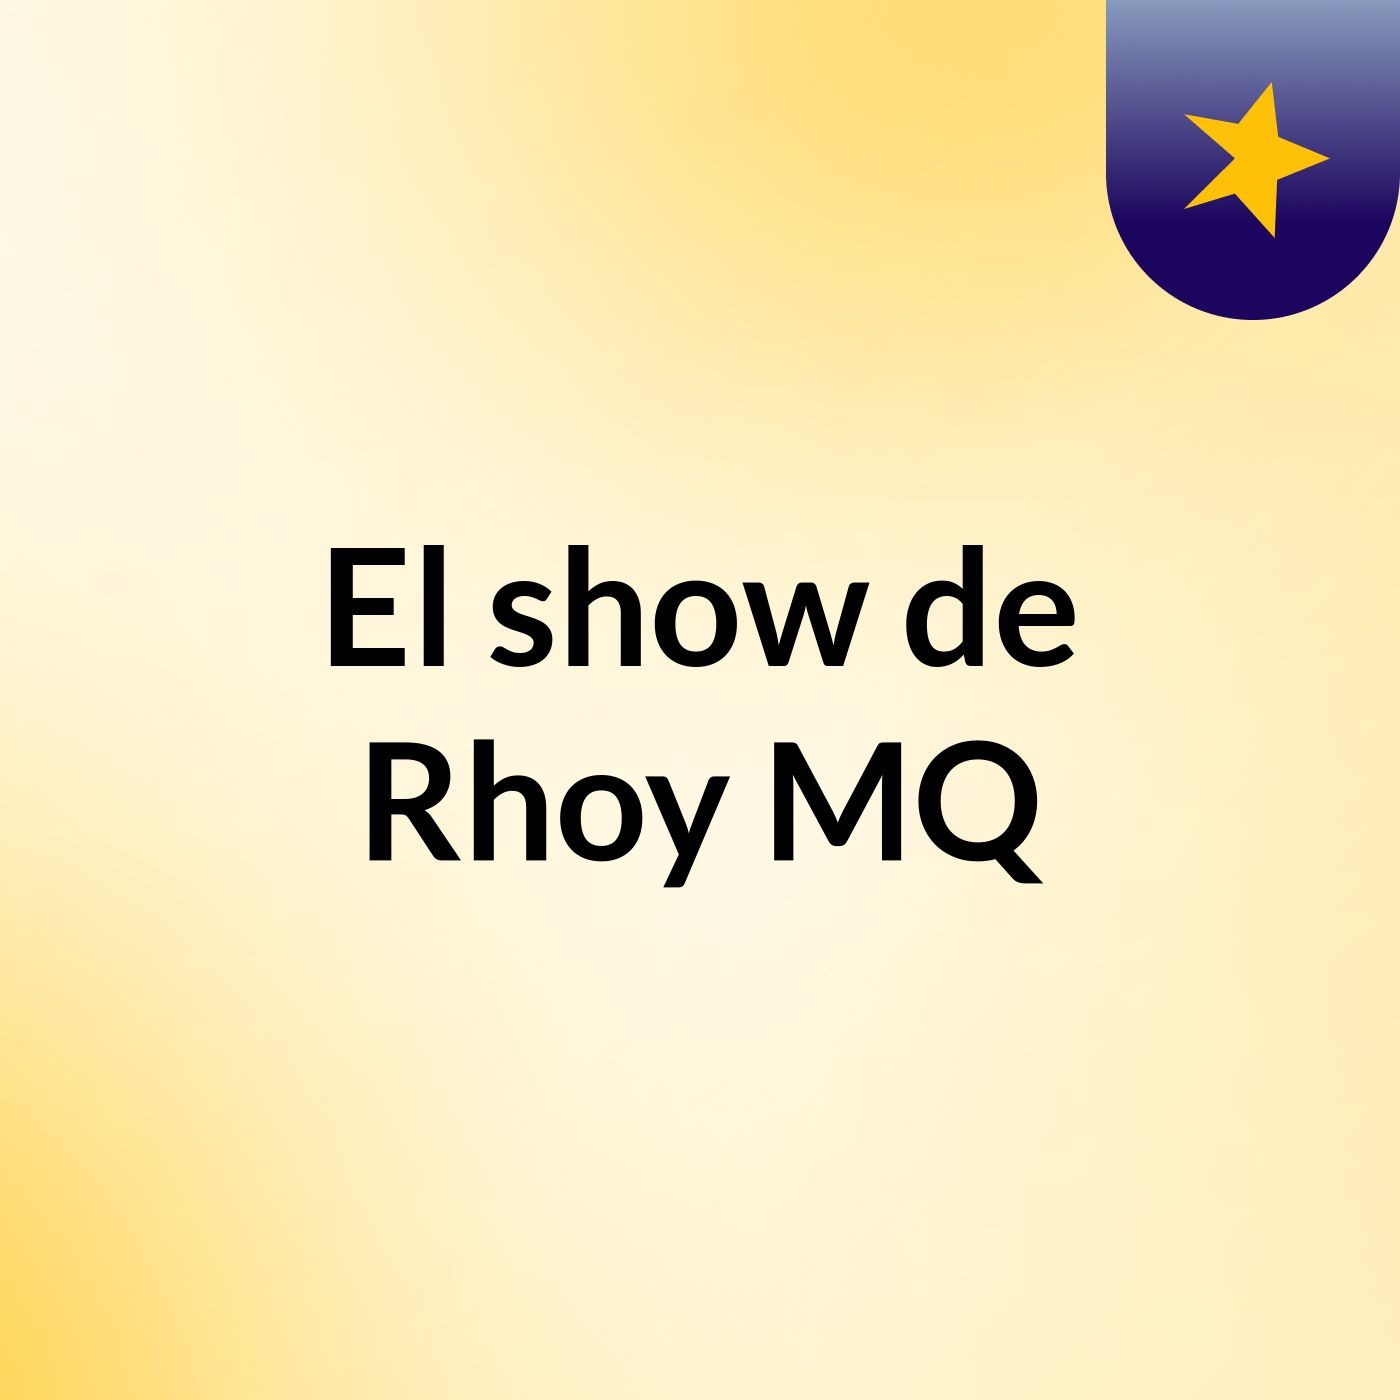 El show de Rhoy MQ